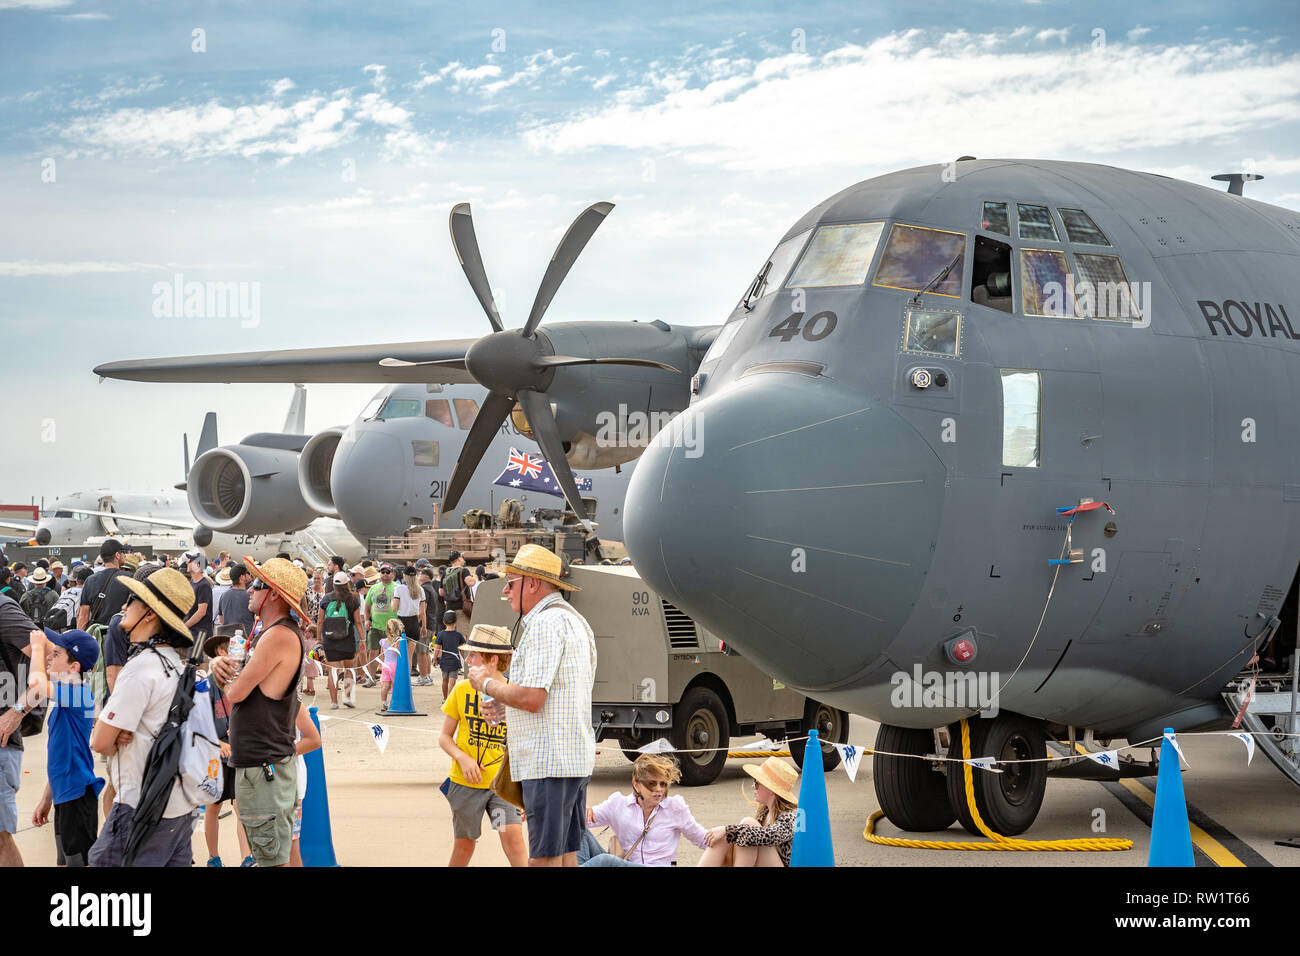 Avalon, Melbourne, Australia - Mar 3, 2019: Military cargo planes Stock Photo